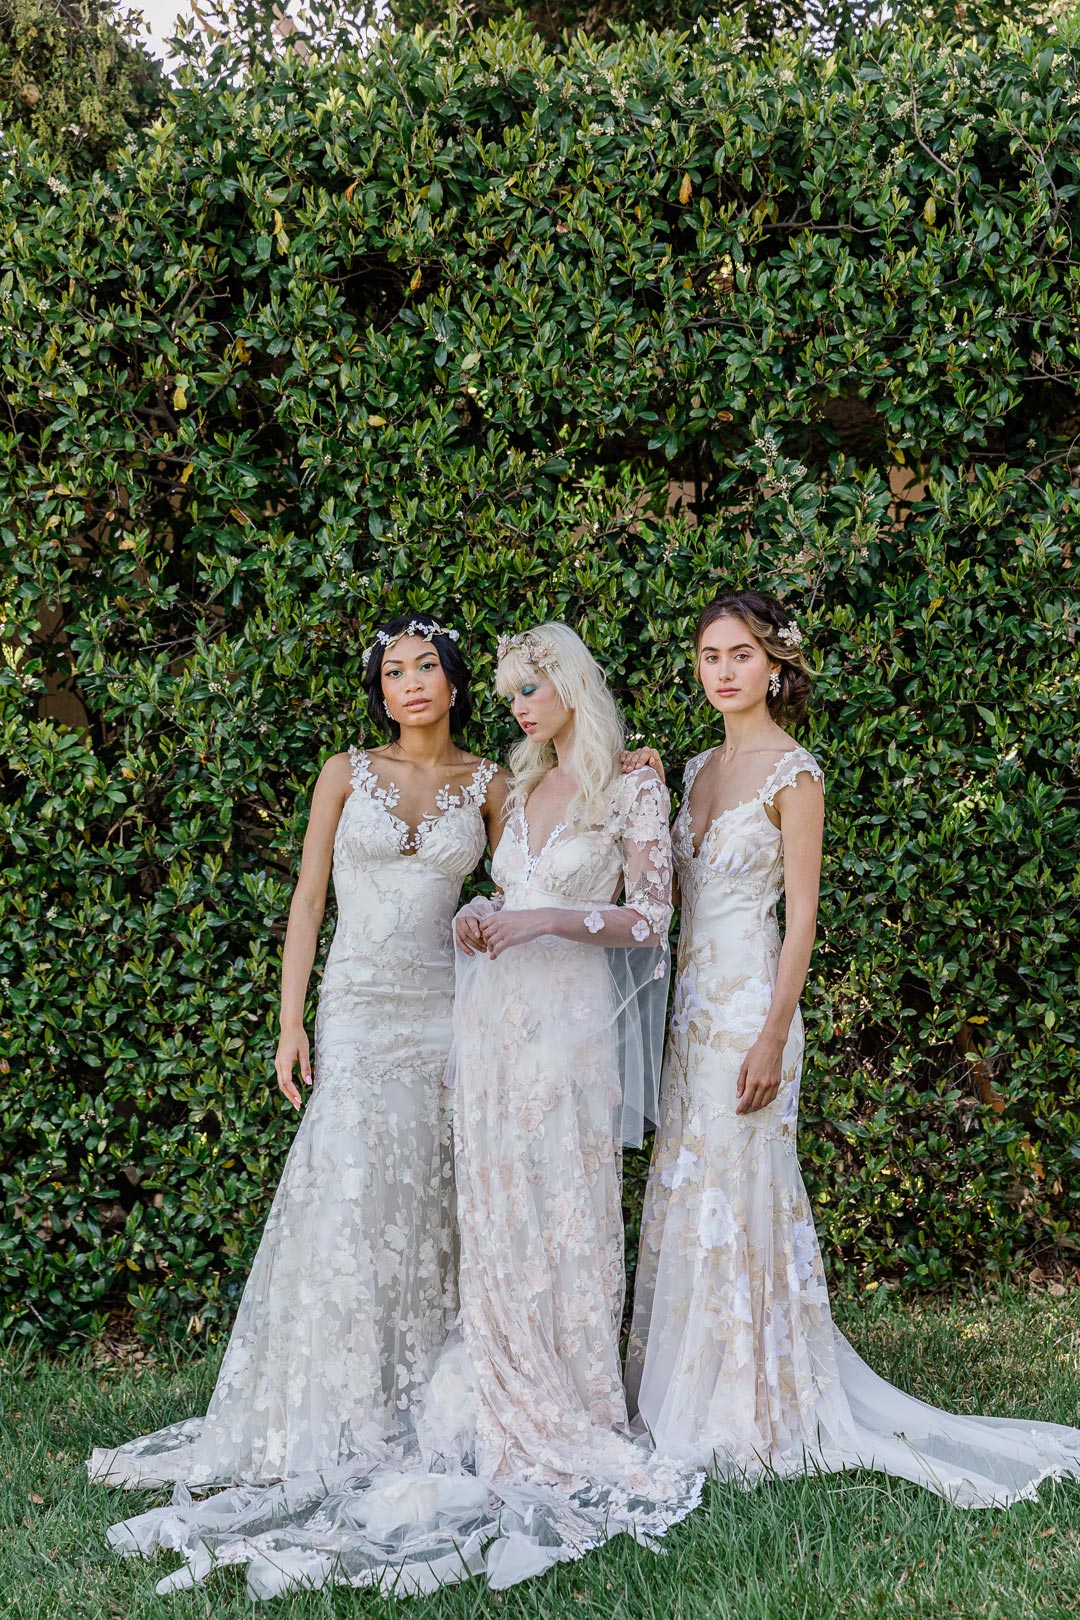 Models wear Claire Pettibone Wedding Dress Designs Les Fleurs Collection